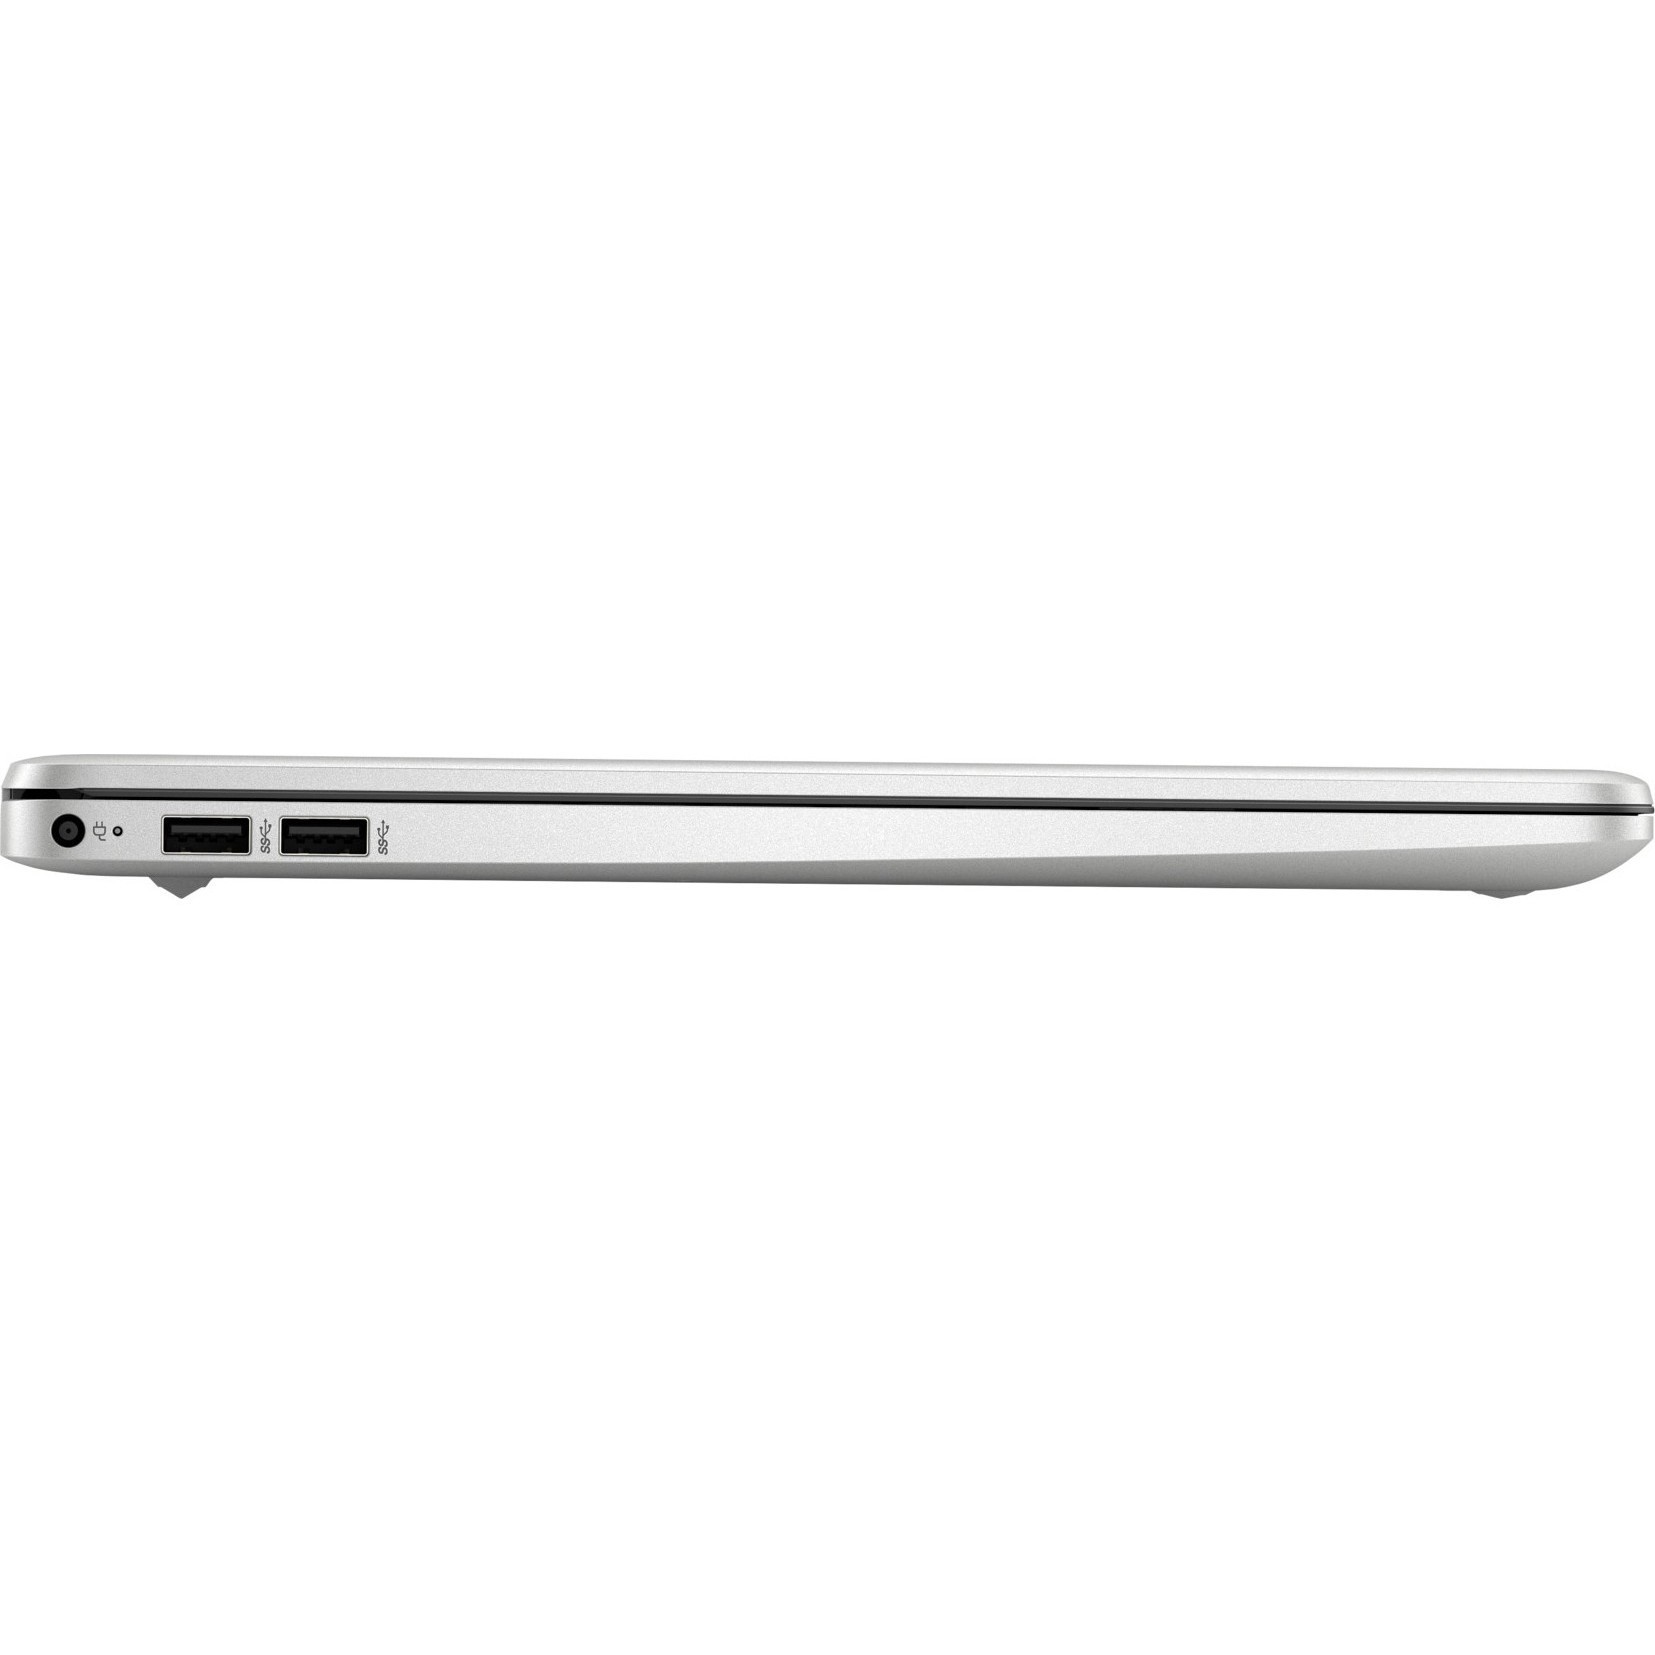 Ноутбук Hp 15s Fq2026ur Цены